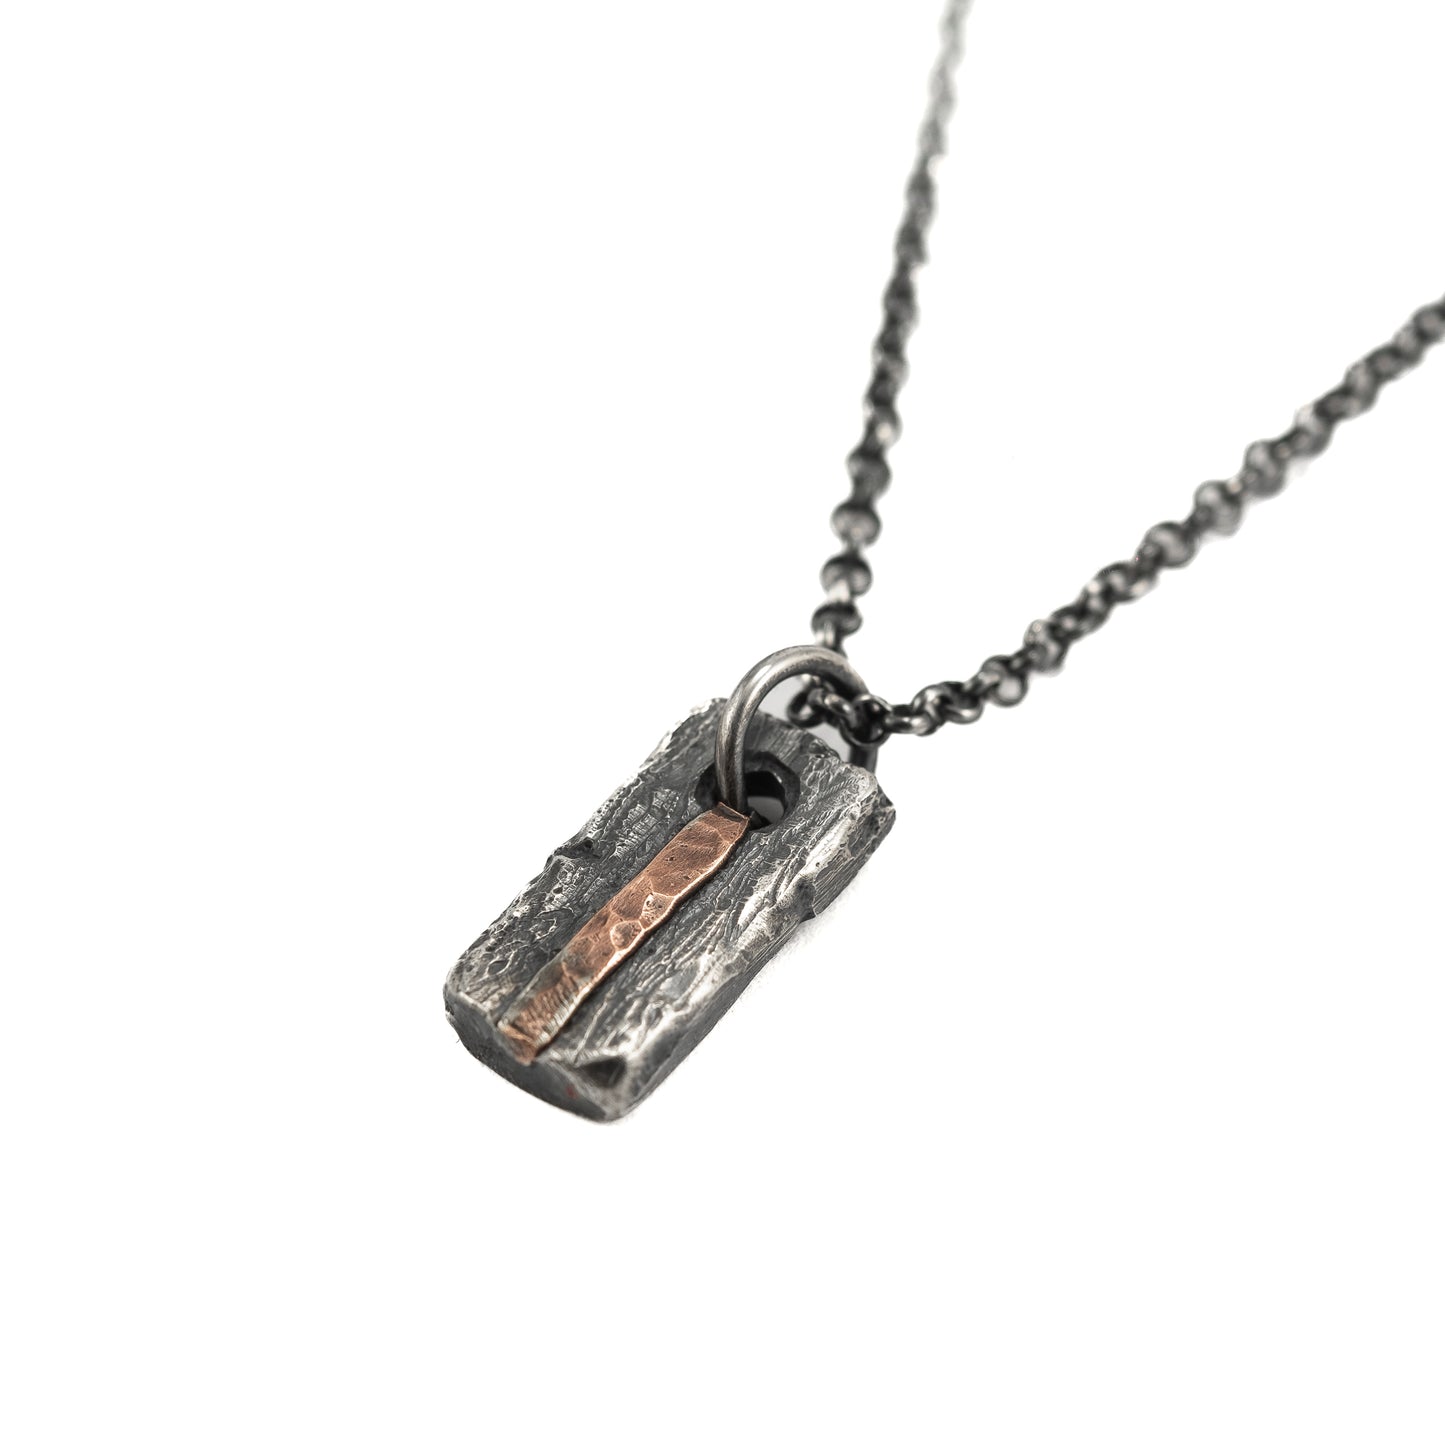 Unique Silver and copper necklace